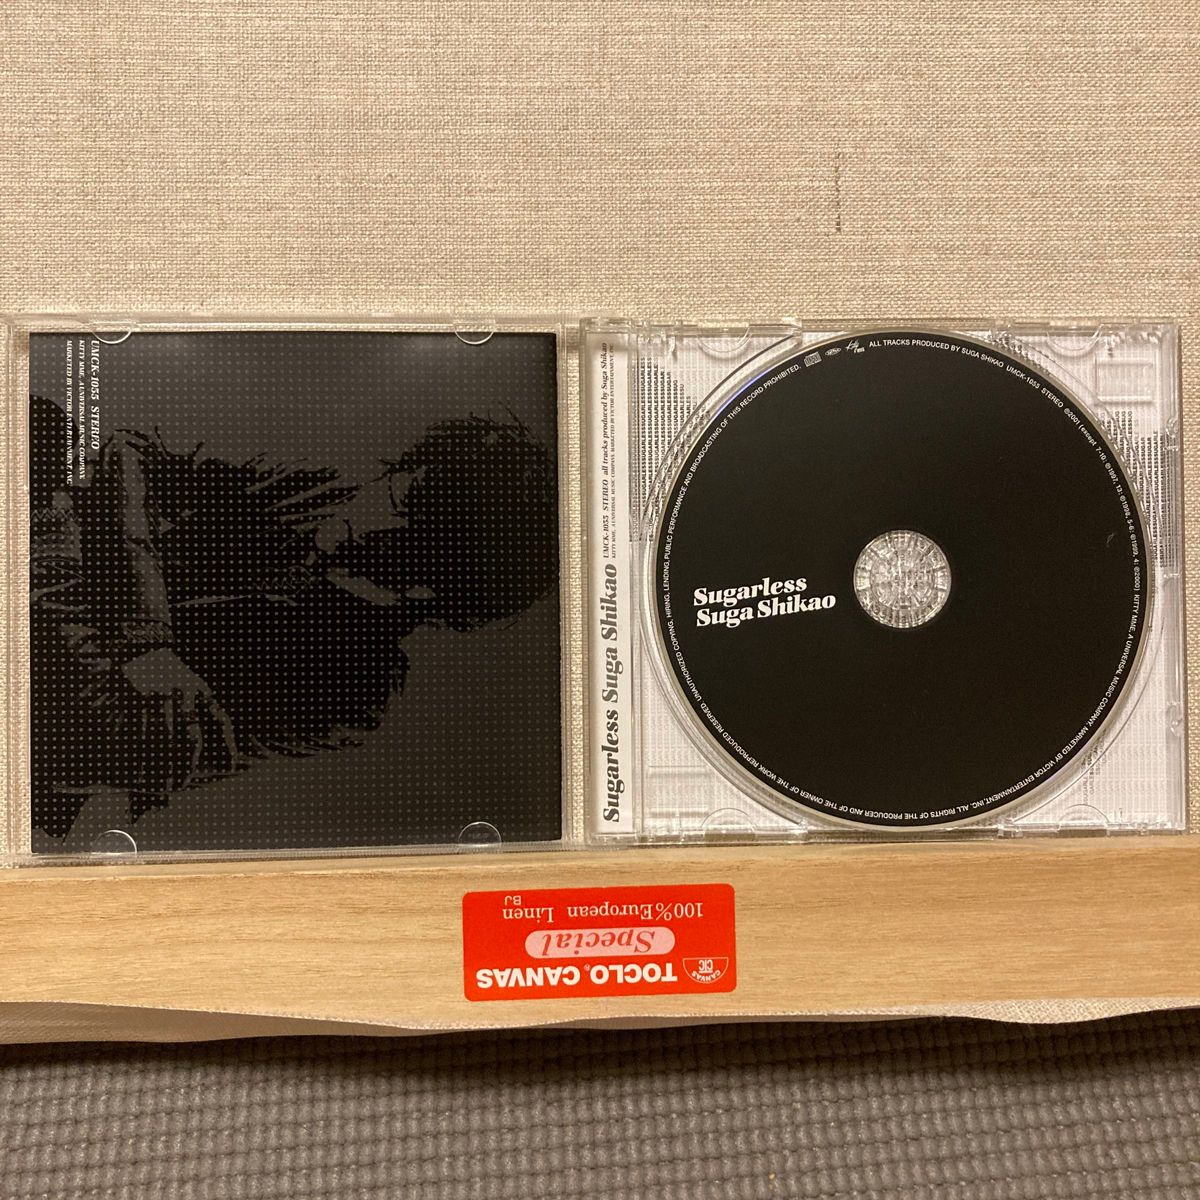 中古 スガシカオ CD アルバム 3つ